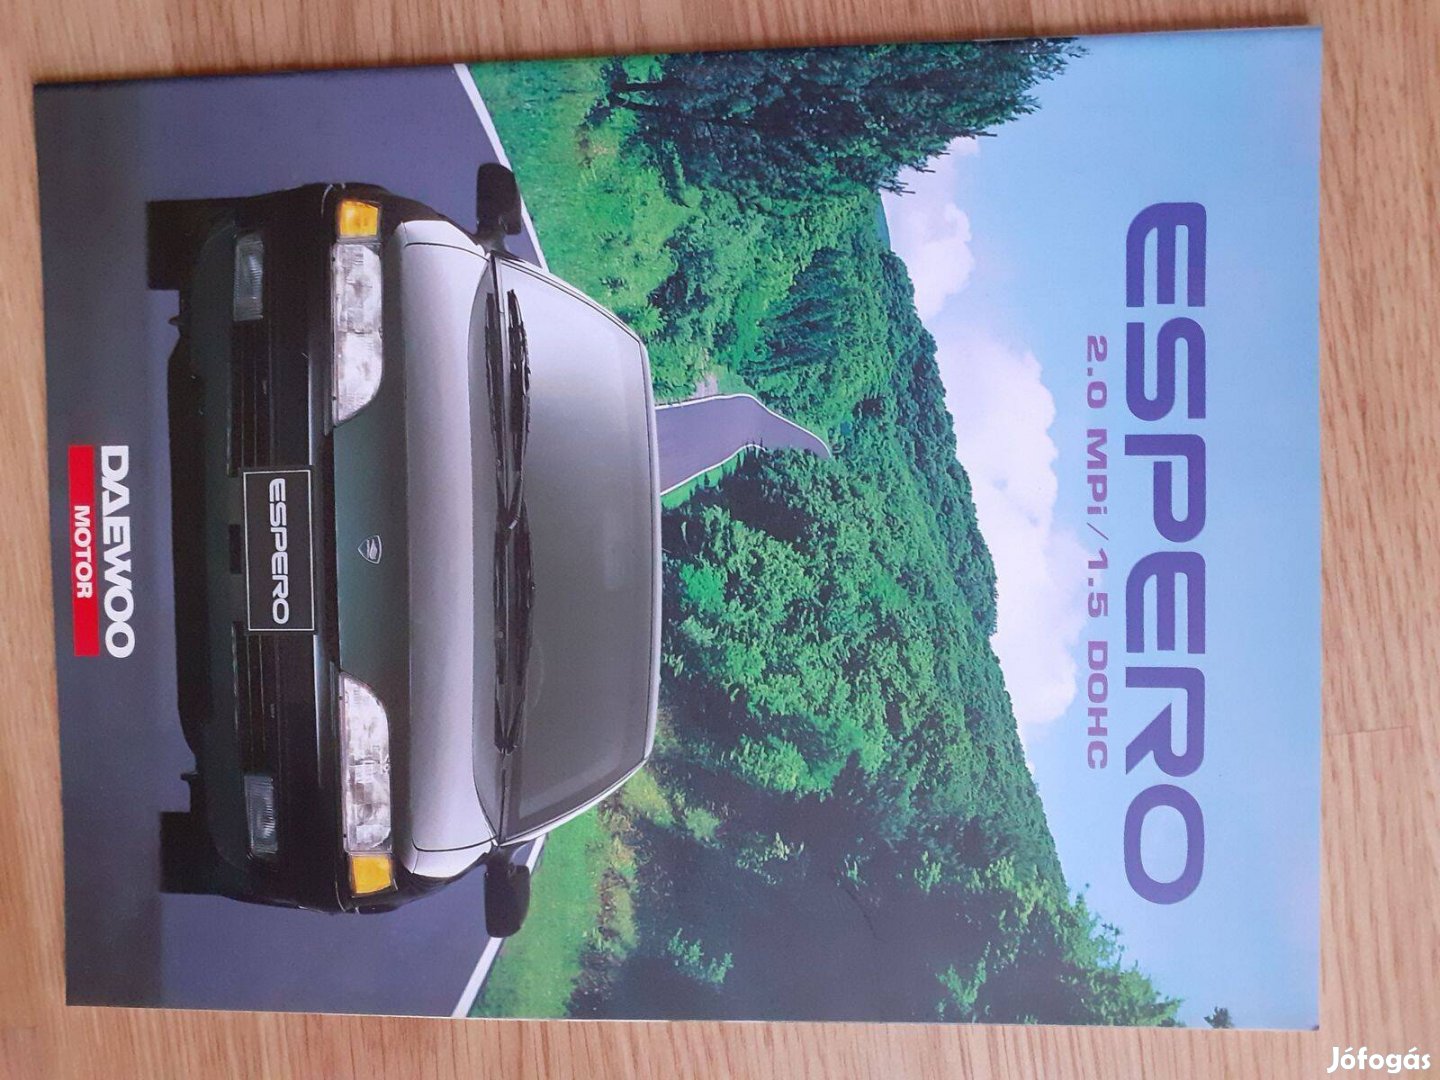 Daewoo Espero prospektus - 1993, angol nyelvű